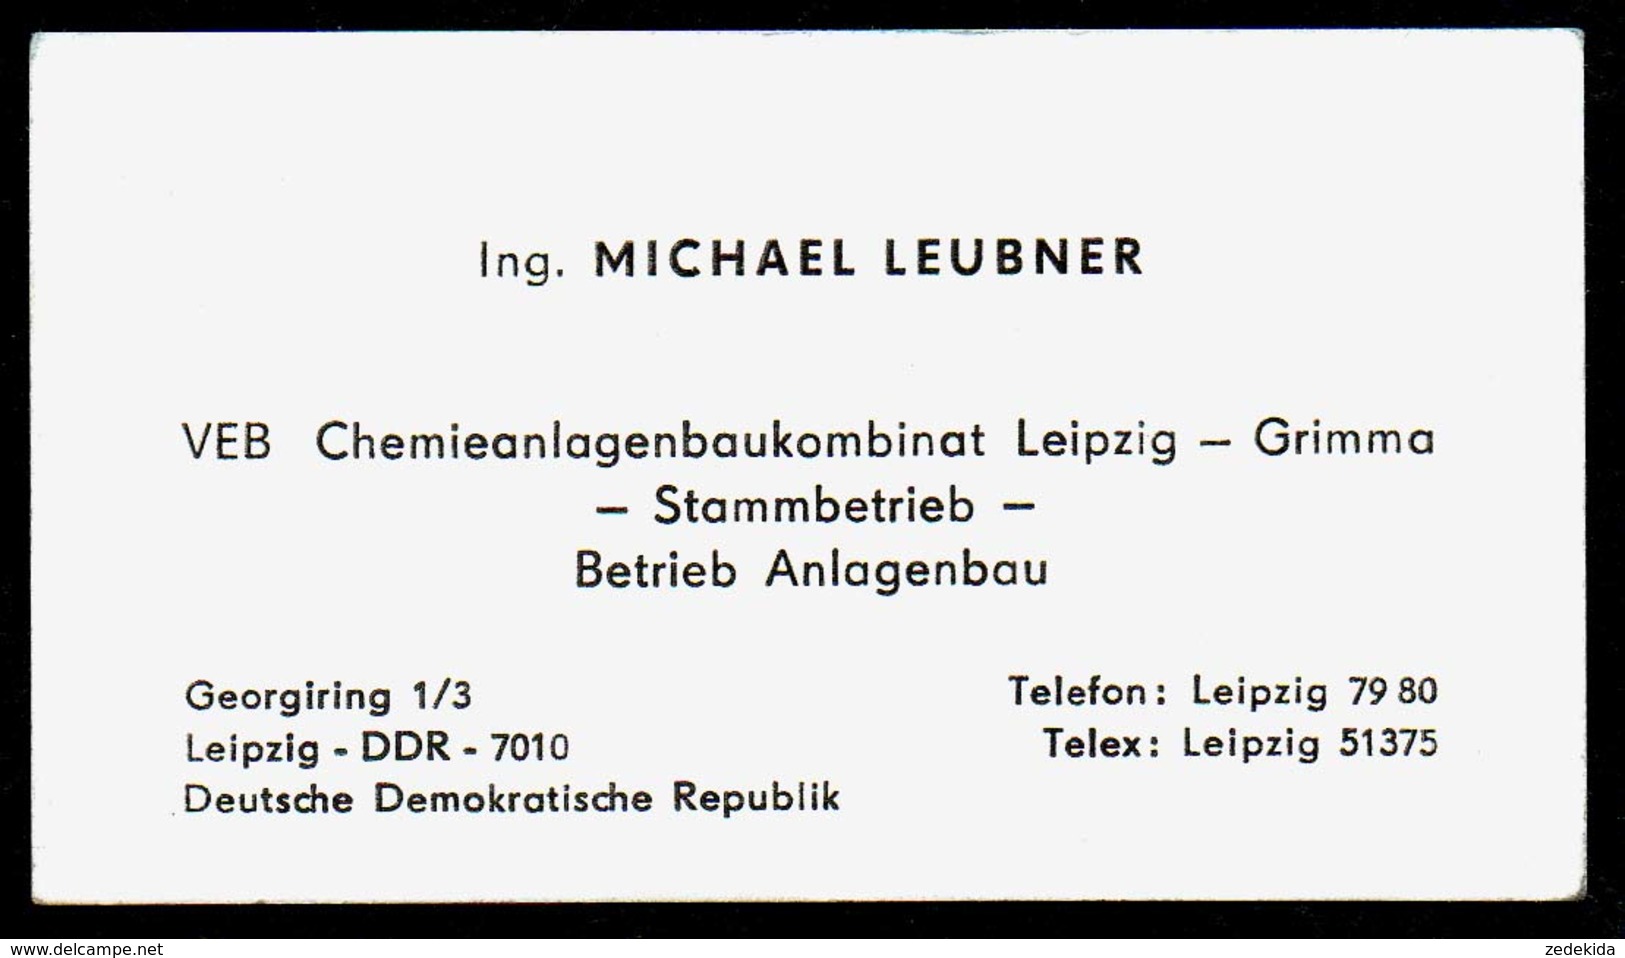 B7345 - Leipzig Grimma - DDR - VEB Chemieanlagenbaukombinat - Michael Leubner - Visitenkarte - Visitenkarten